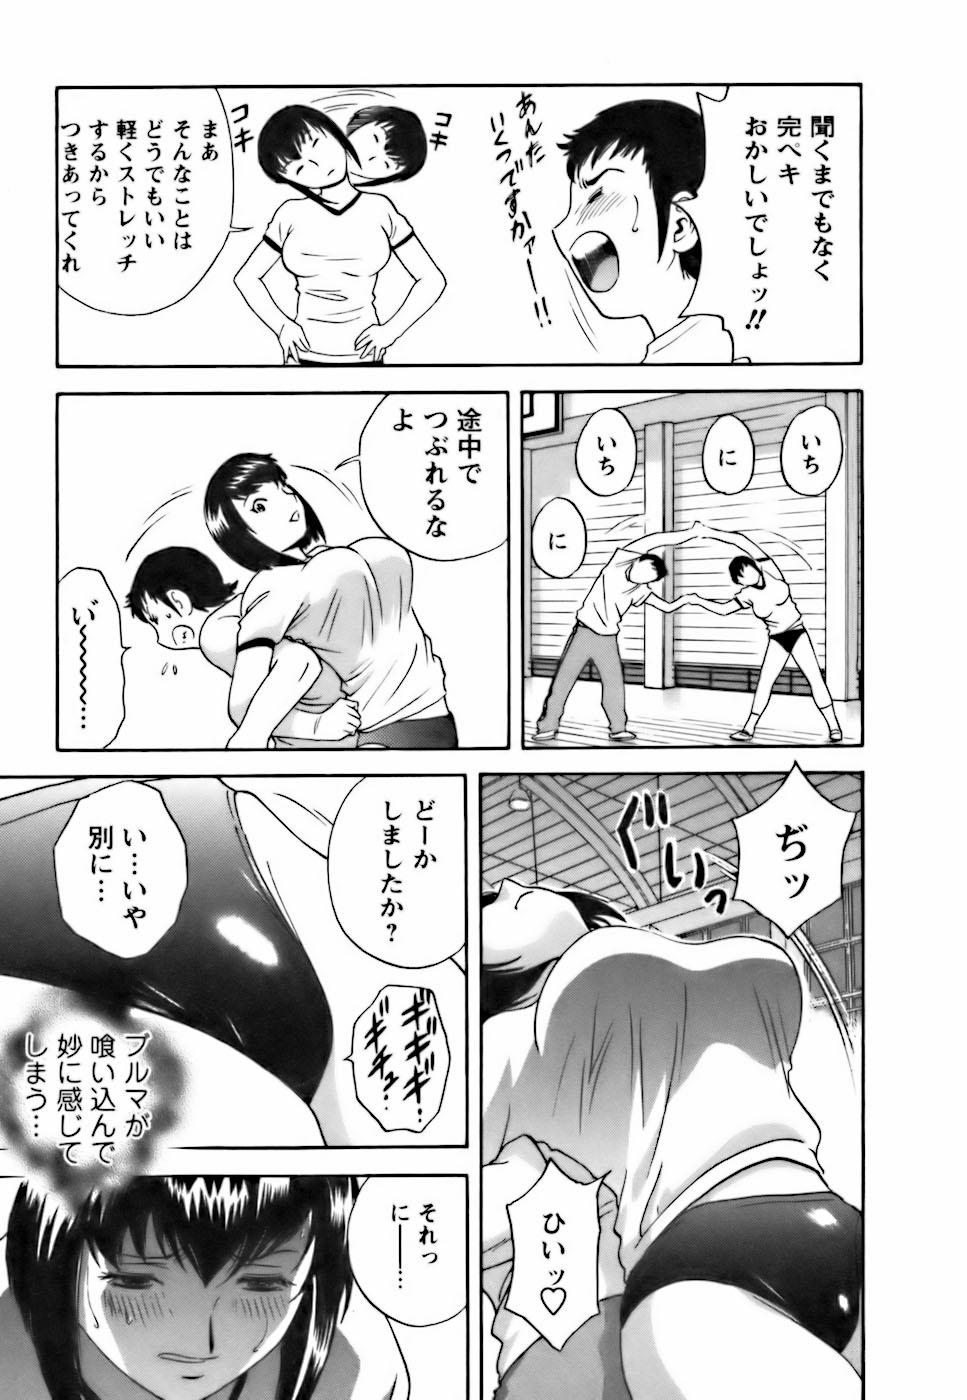 [Hidemaru] Mo-Retsu! Boin Sensei (Boing Boing Teacher) Vol.3 14